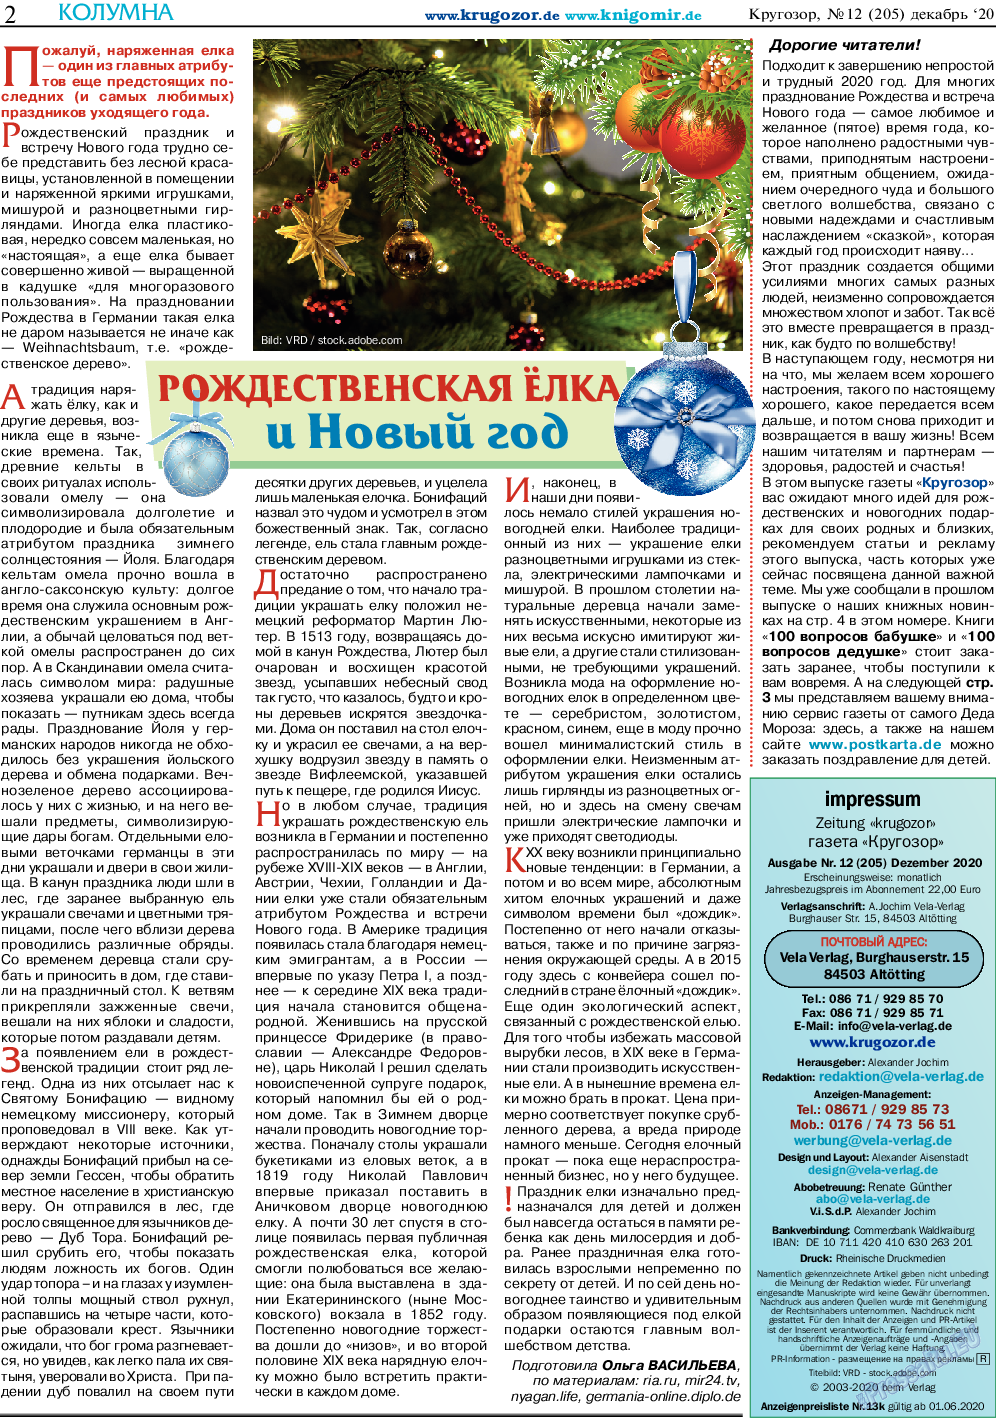 Кругозор, газета. 2020 №12 стр.2